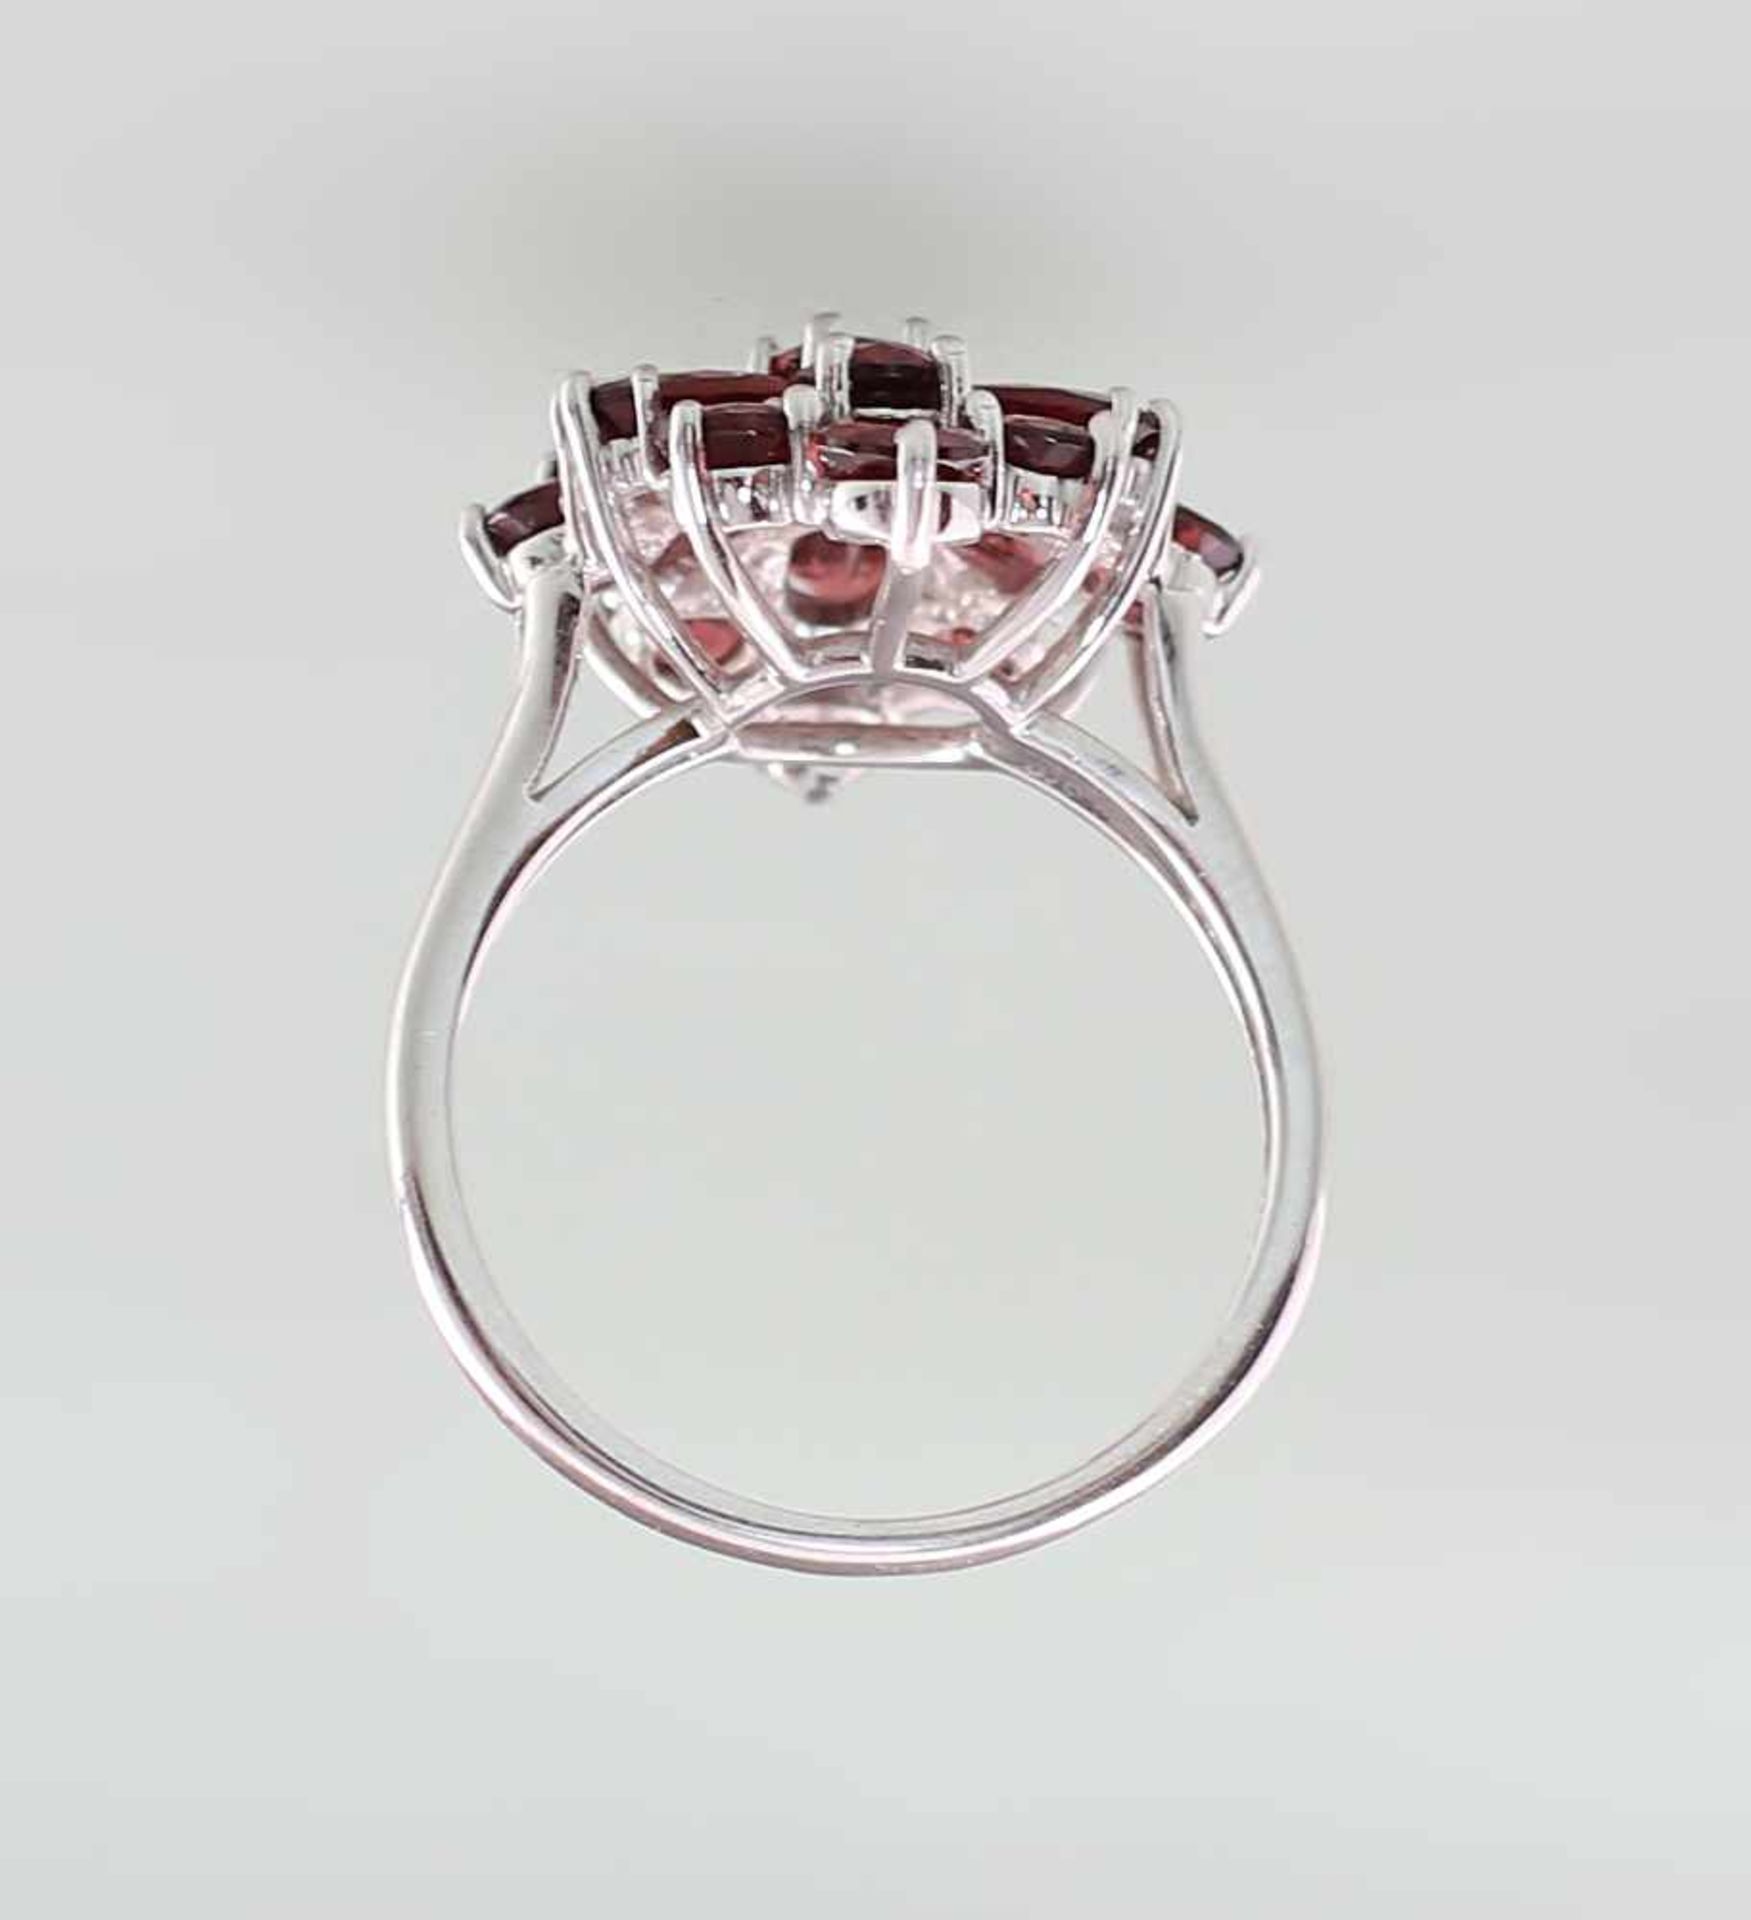 Granat-Ring925er Silber, rhodiniert, mit krappengefassten Granaten verziert, Gr. 60 - Bild 4 aus 5